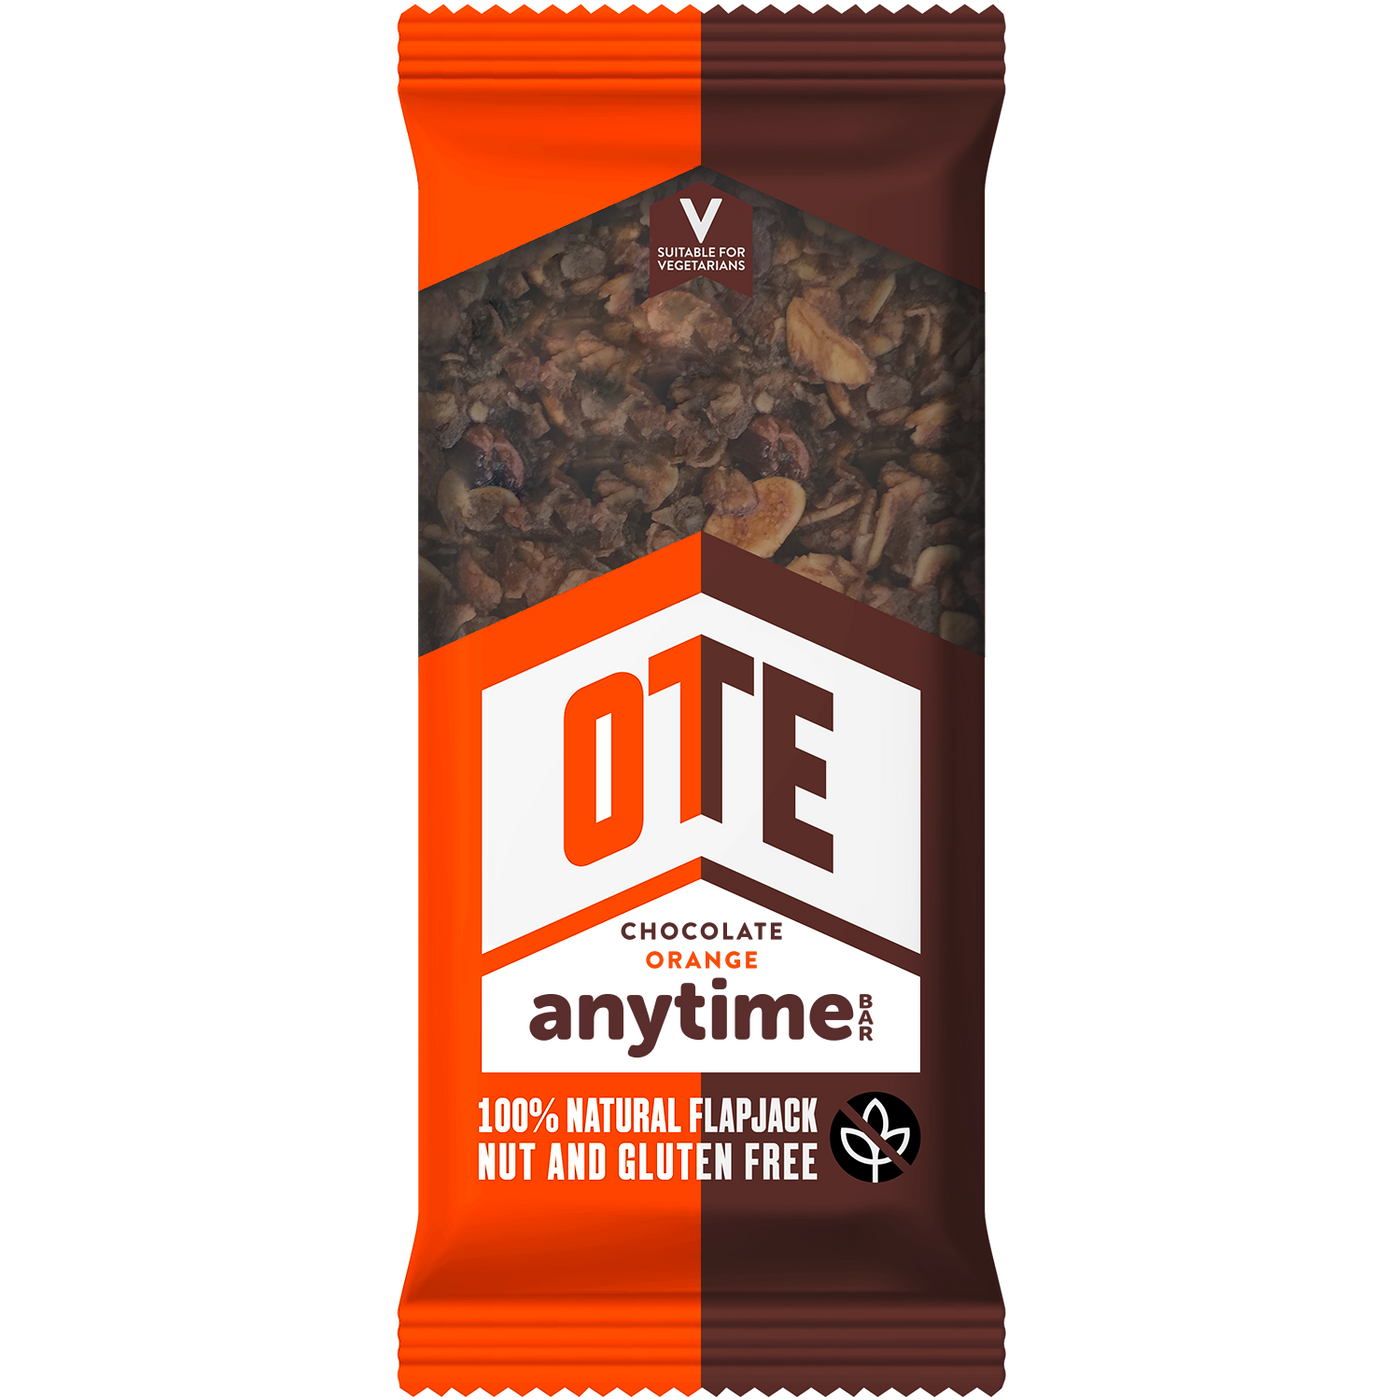 OTE Anytime Bar - Chocolate Orange